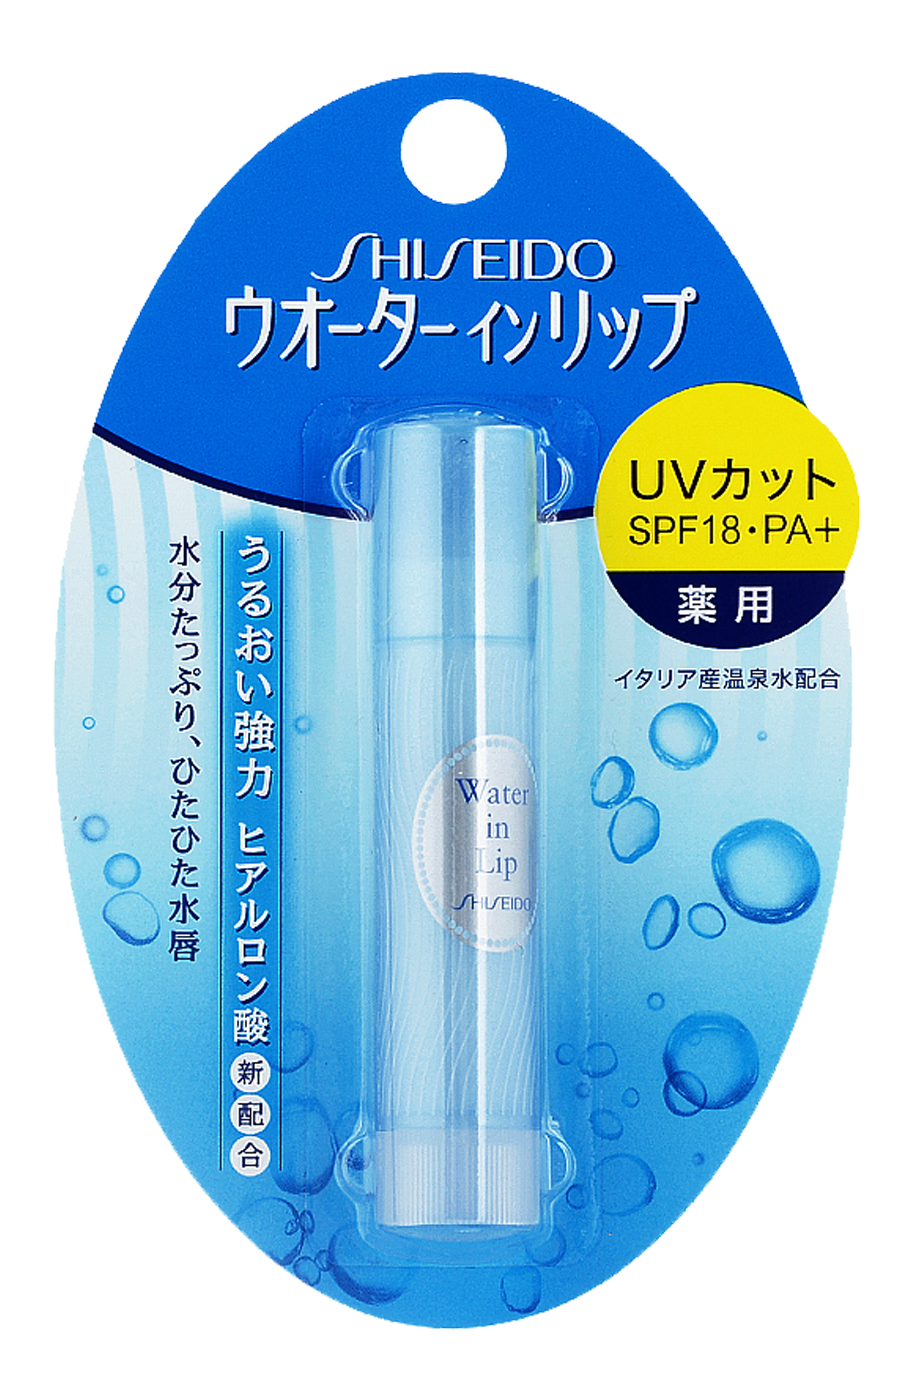 Shiseido Water In Lip гигиеническая увлажняющая губная помада с УФ-фильтром без аромата